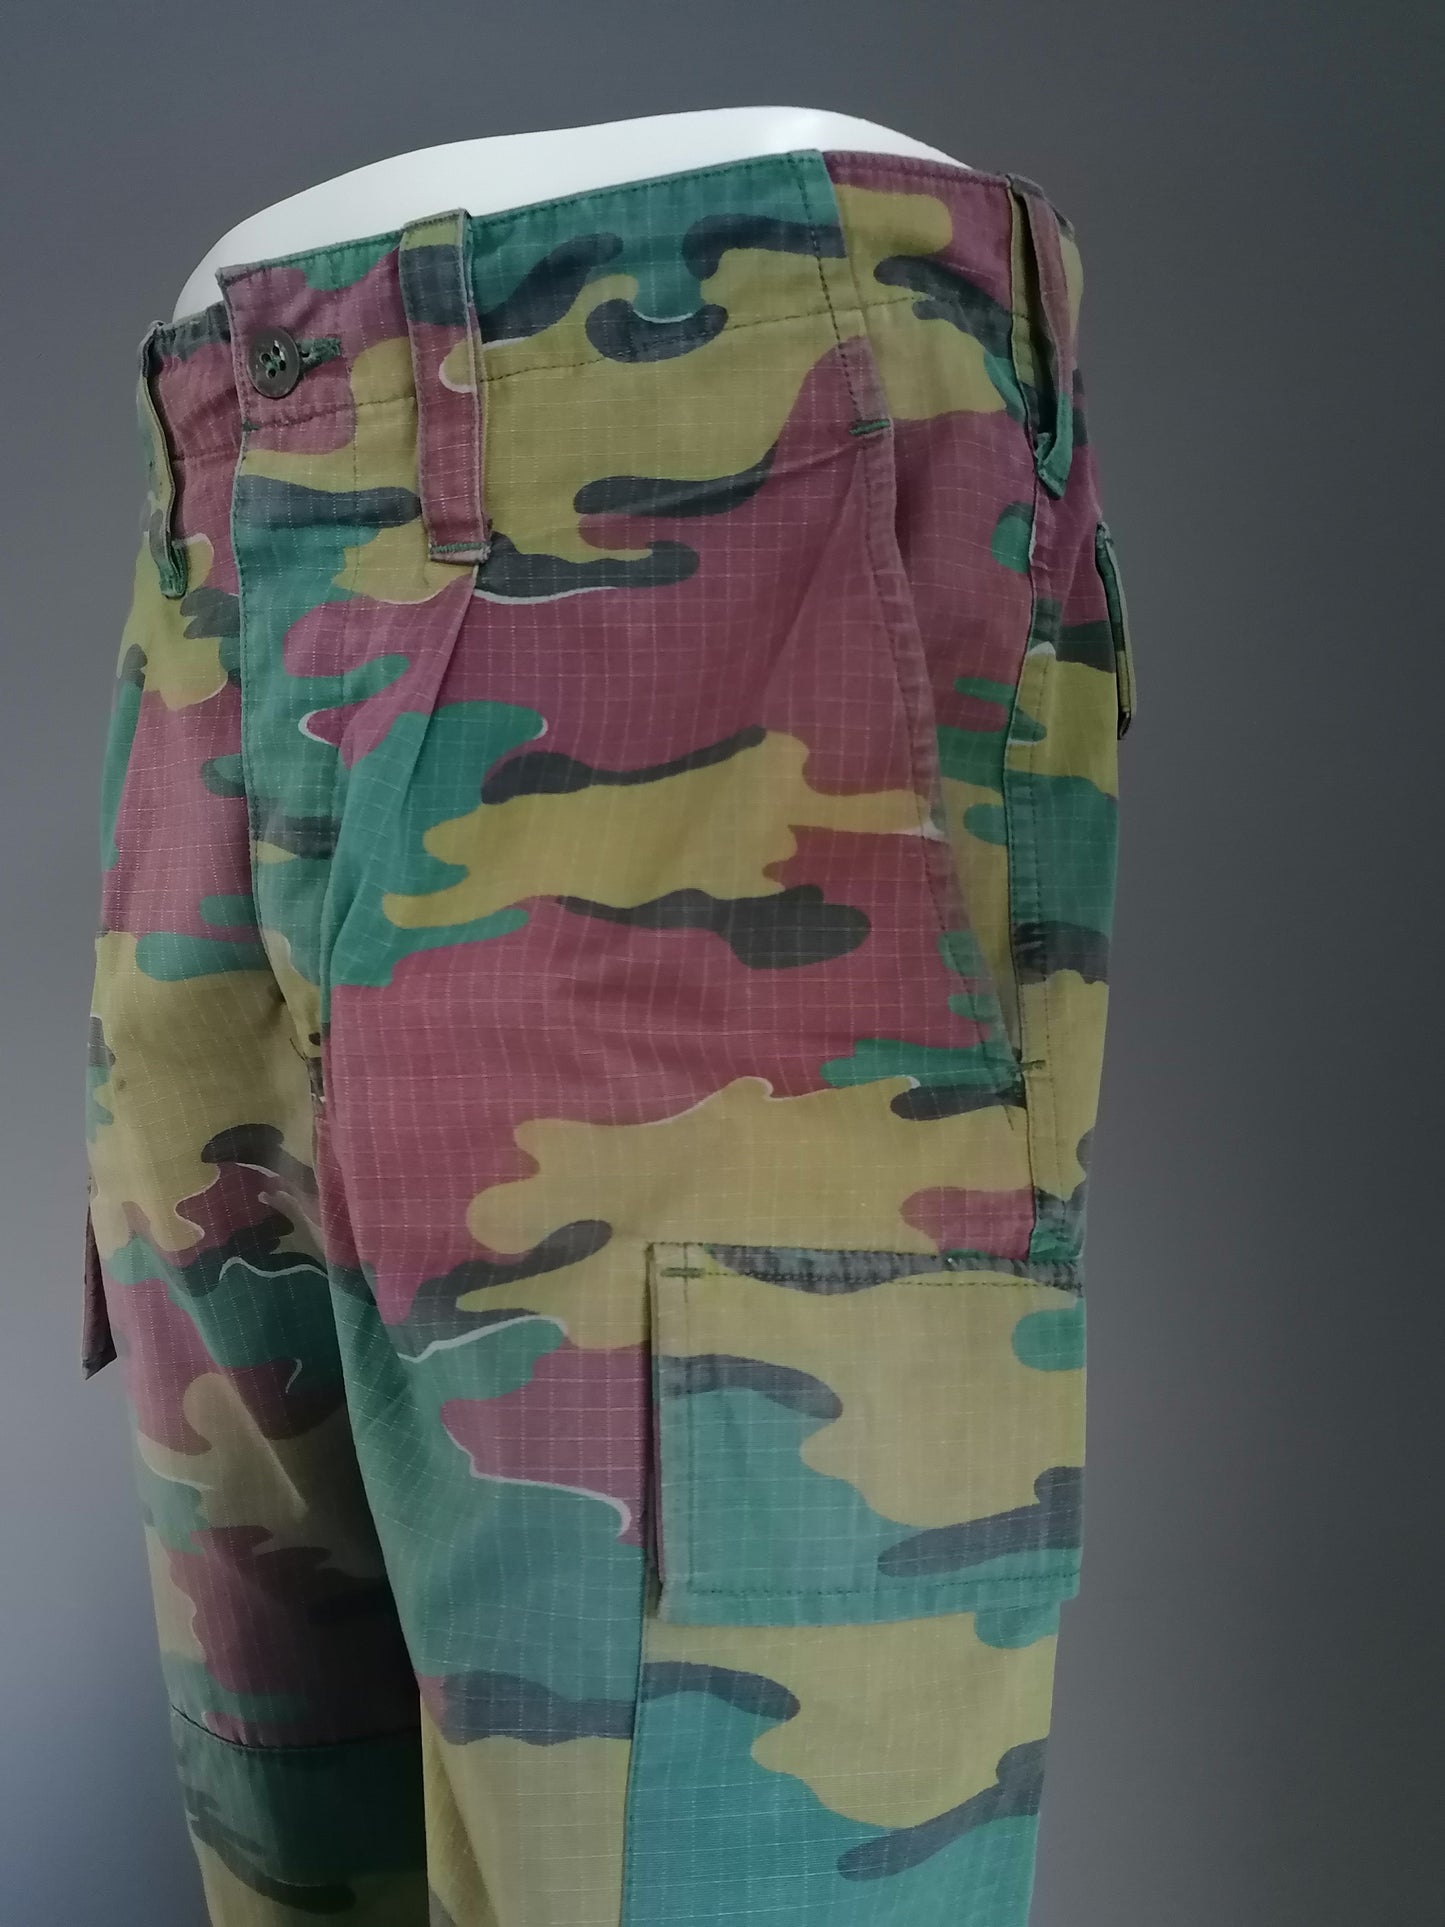 Pantalones del ejército / ejército con botones. Impresión de camuflaje verde marrón. "2000". Talla M.